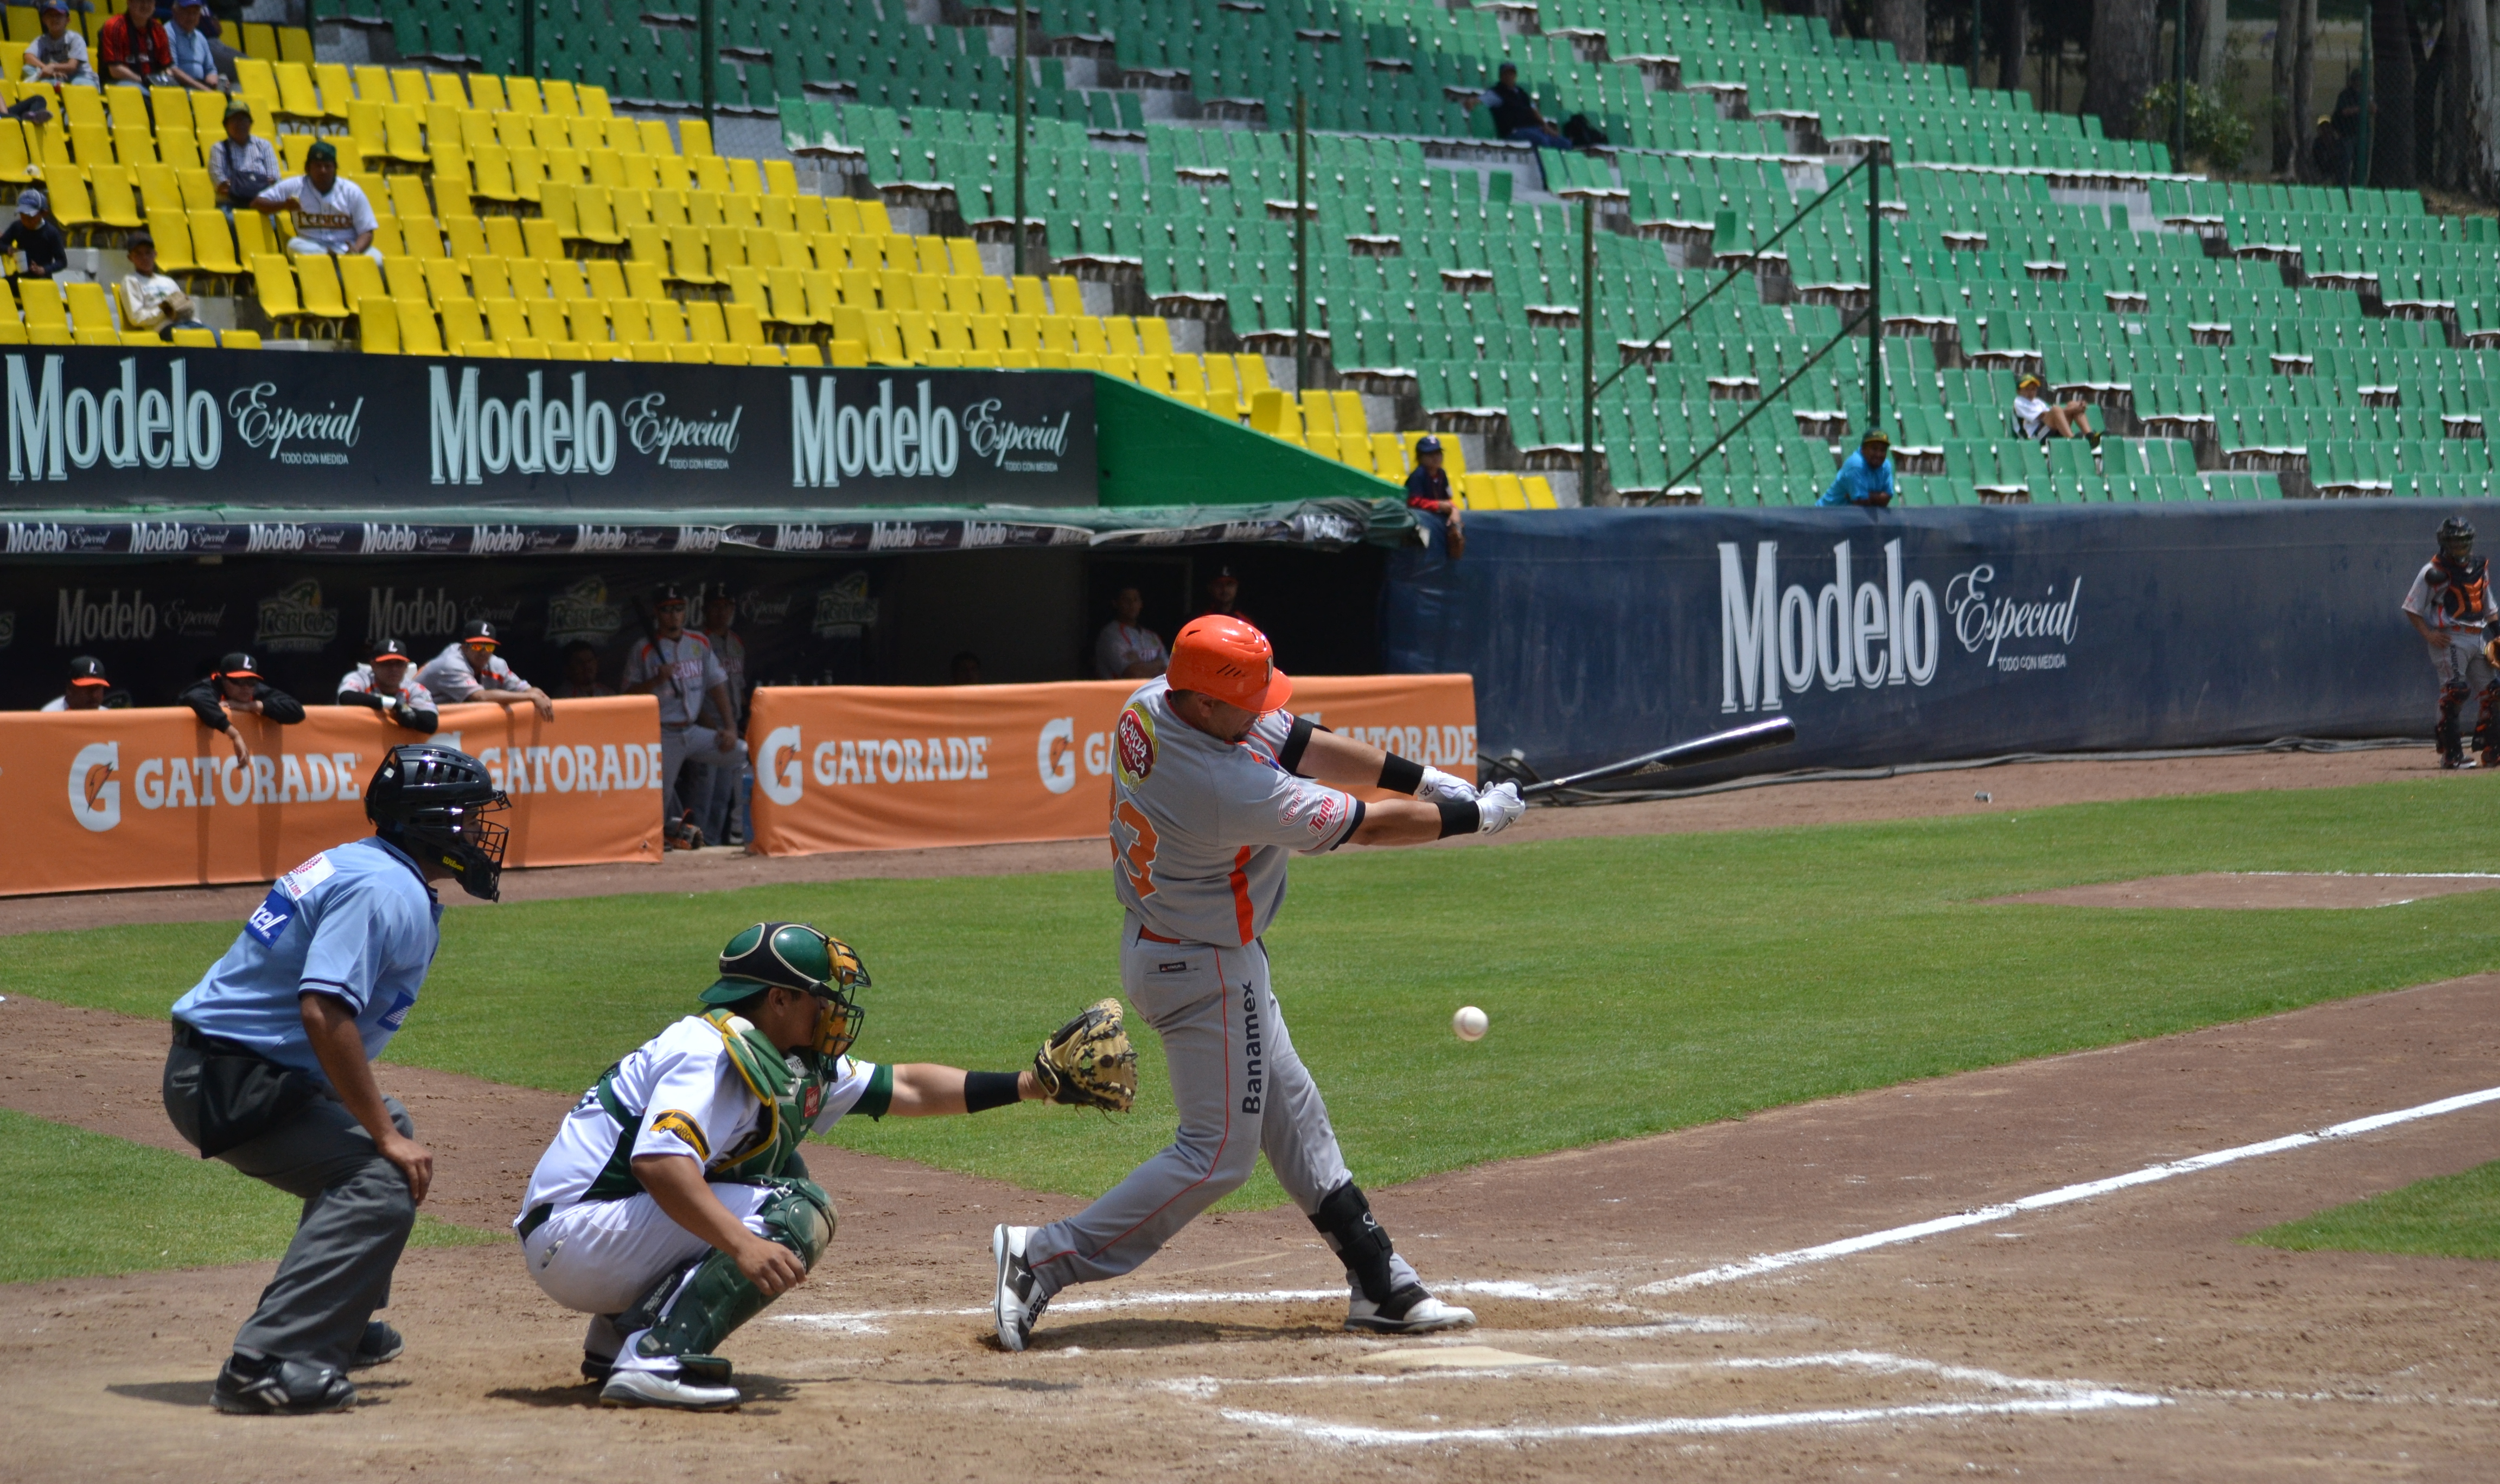 Liga Mexicana de Beisbol, Sitio Oficial